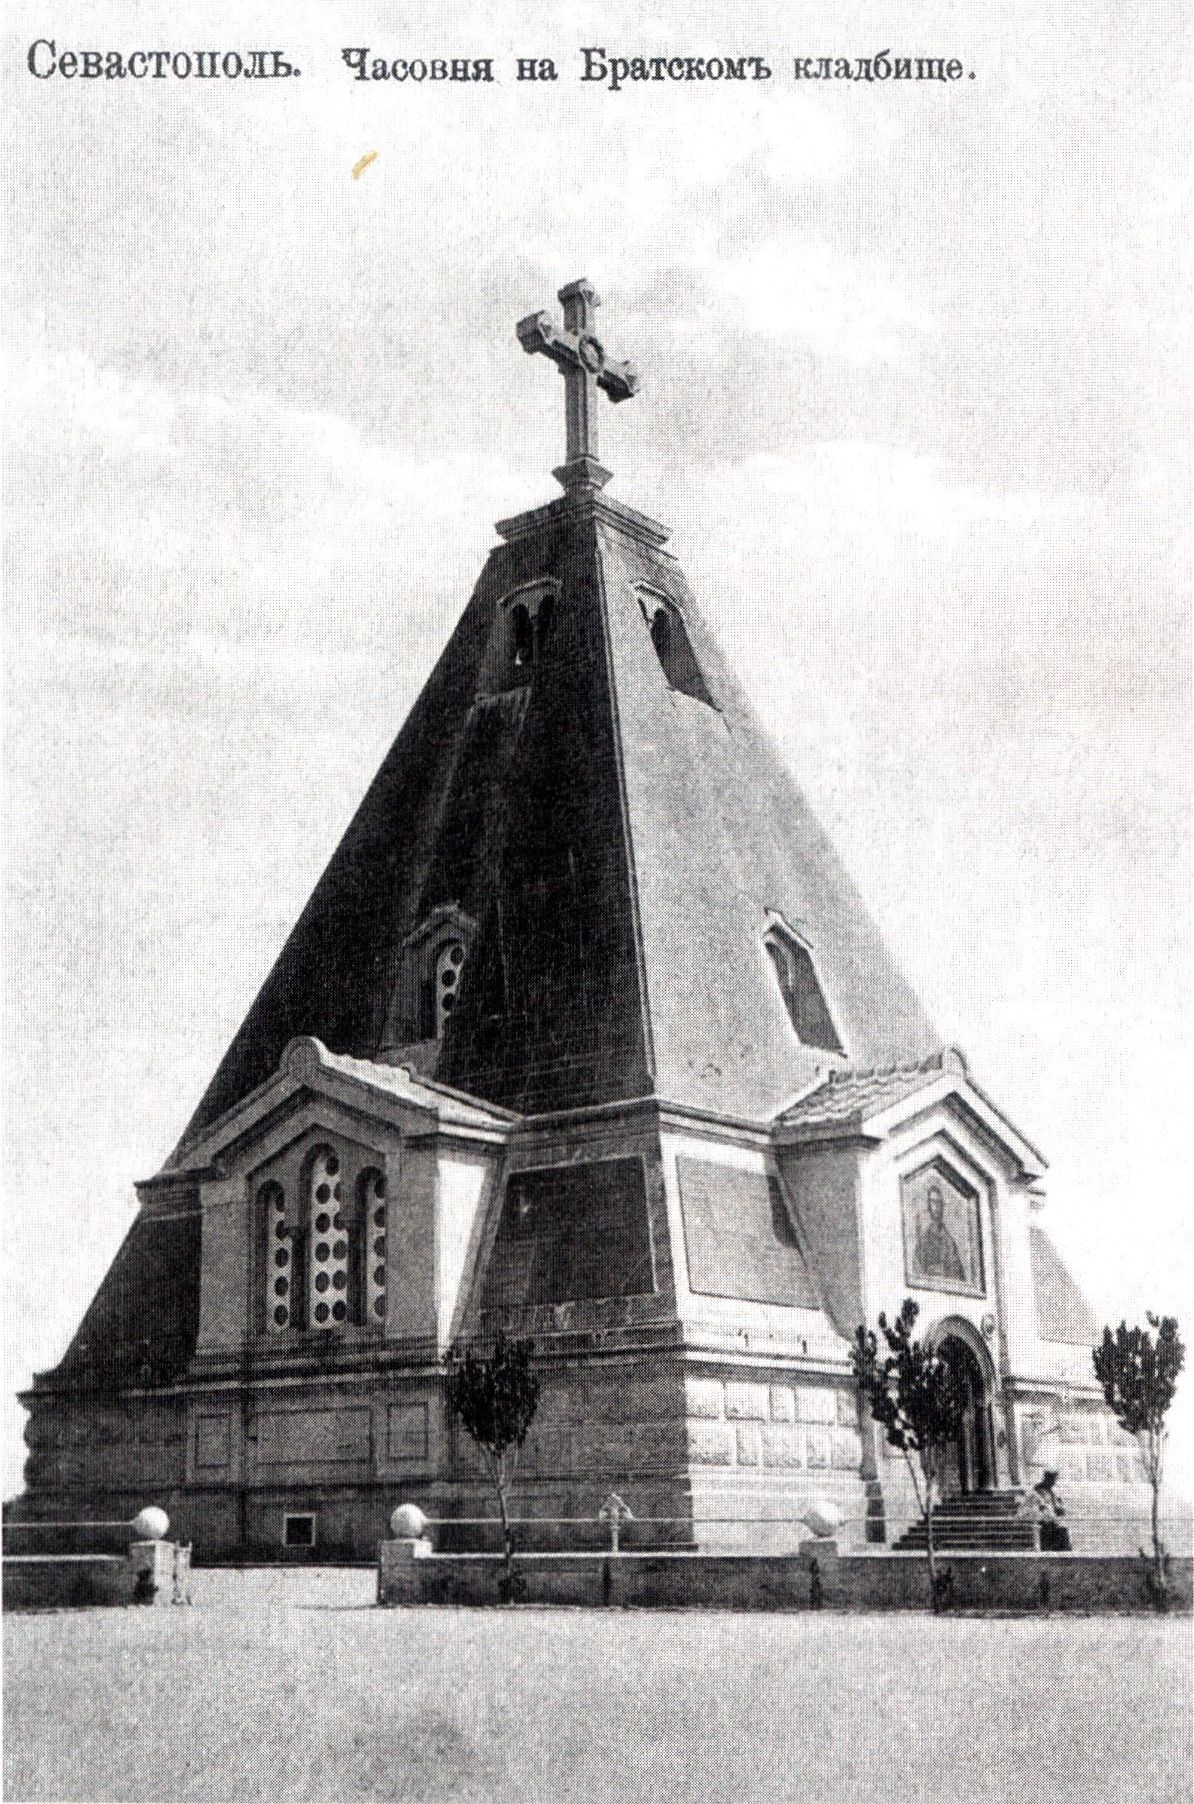 Севастополь. Храм Святителя Николая на Братском кладбище